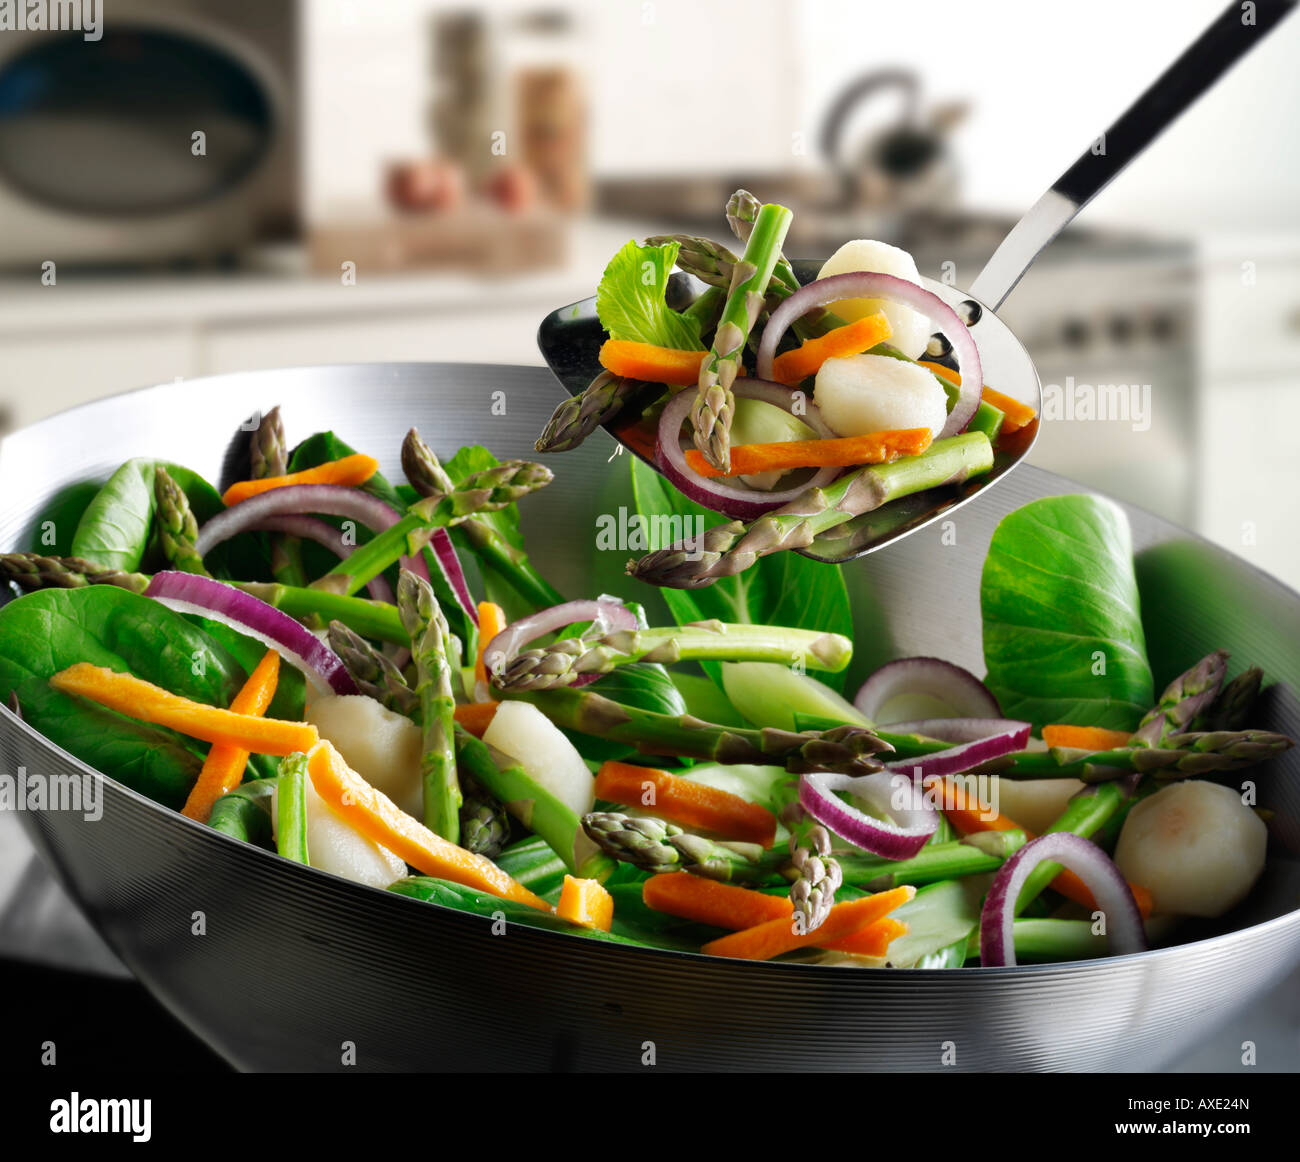 Gemüse unter Rühren braten im Wok gerührt, mit Spargel, rote Zwiebeln,  Bohnen Triebe, Pak Choi und Gemüse Stockfotografie - Alamy